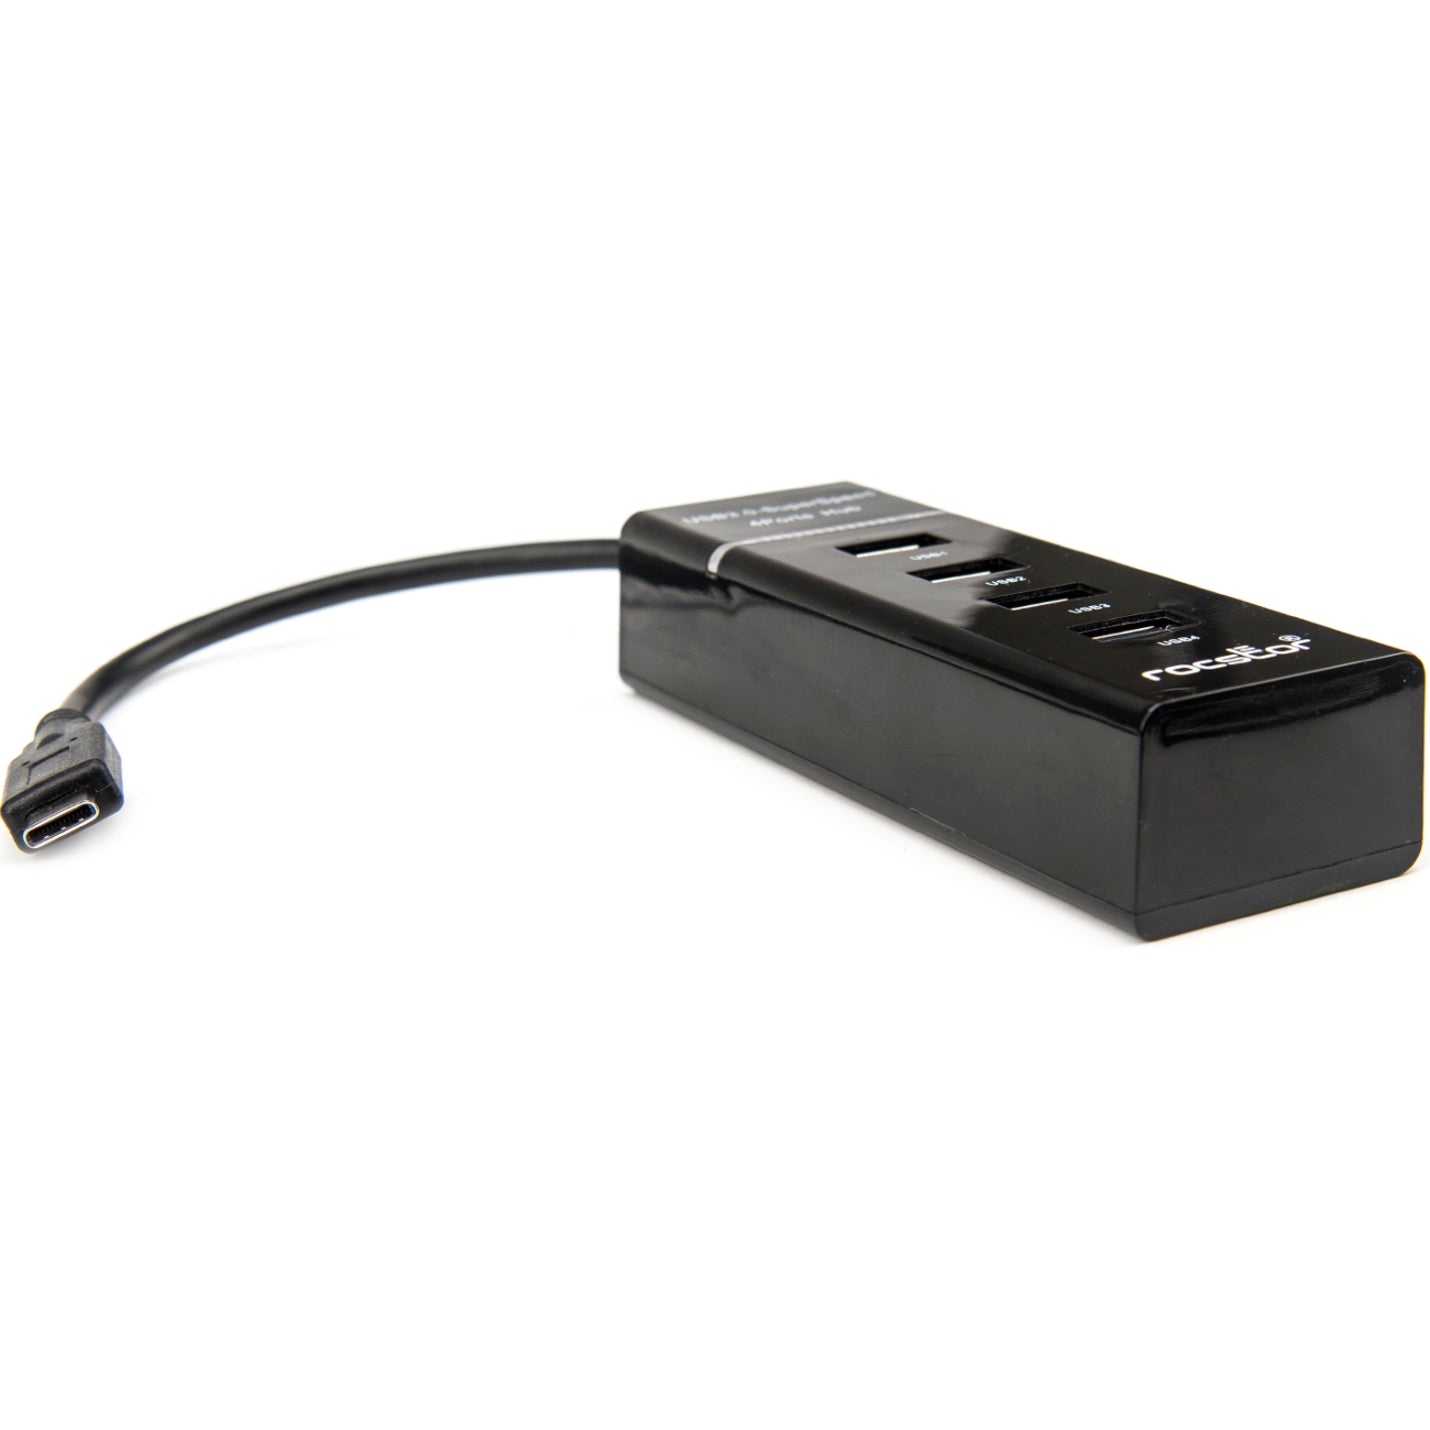 罗克斯特 Y10A228-B1 高级便携式薄型4口 USB C 集线器，4 个 USB 3.0 口，总线供电 品牌名称：罗克斯特